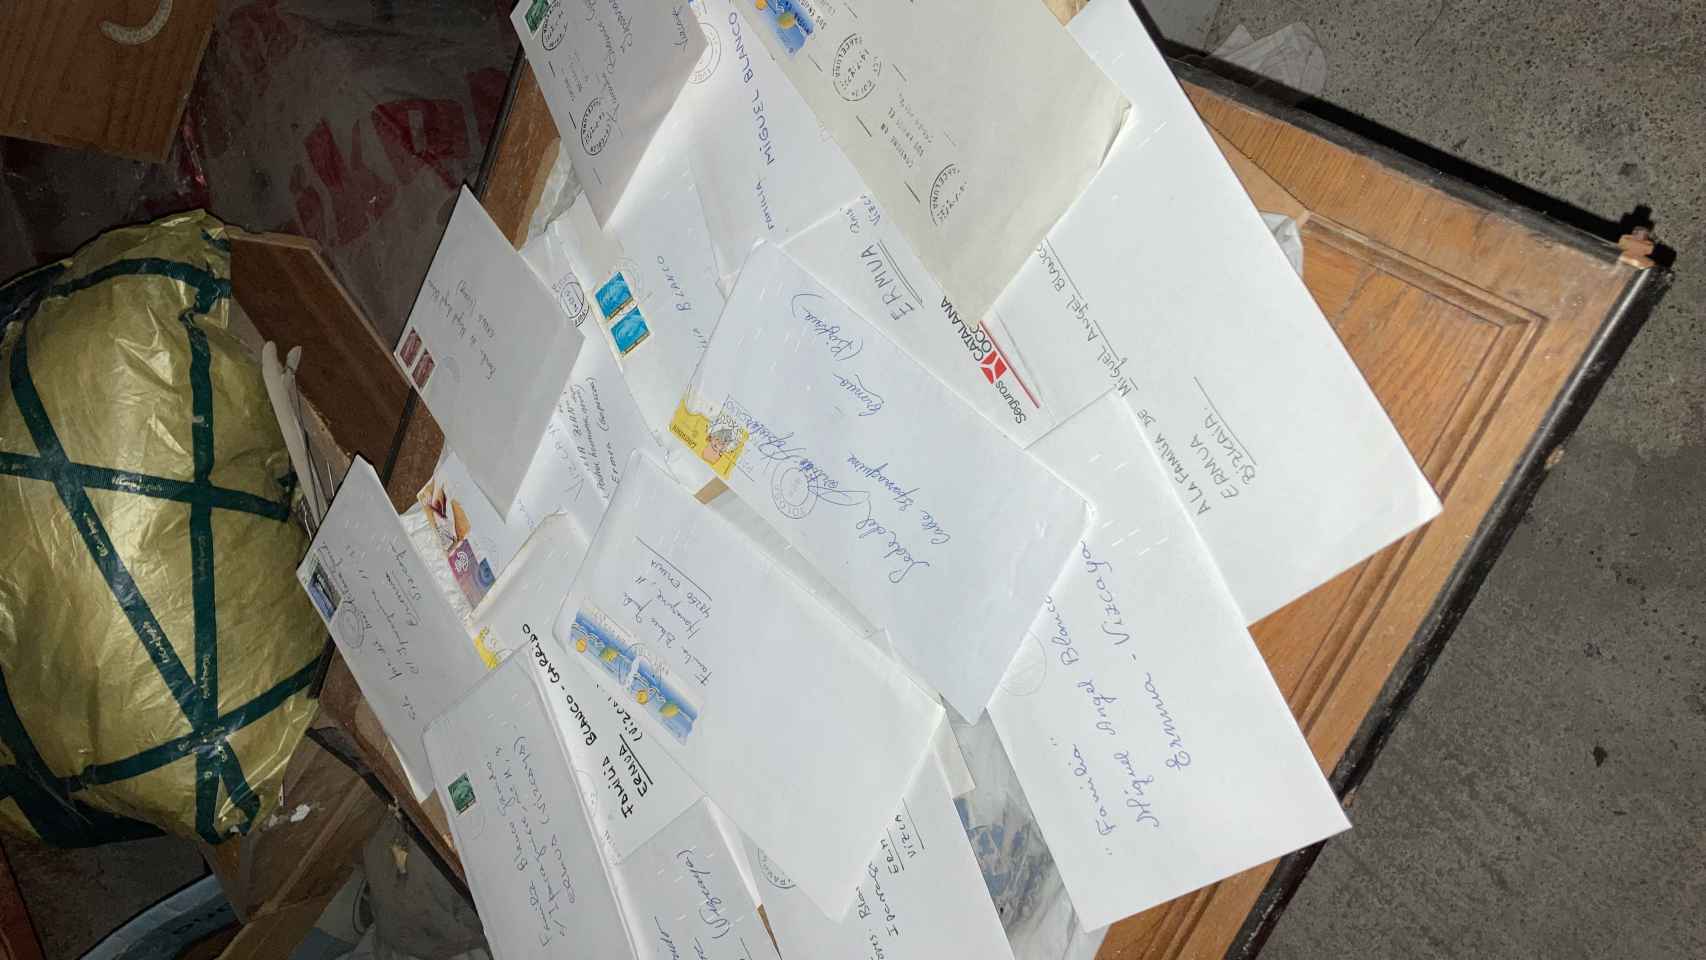 Algunas de las cartas recibidas por la familia.